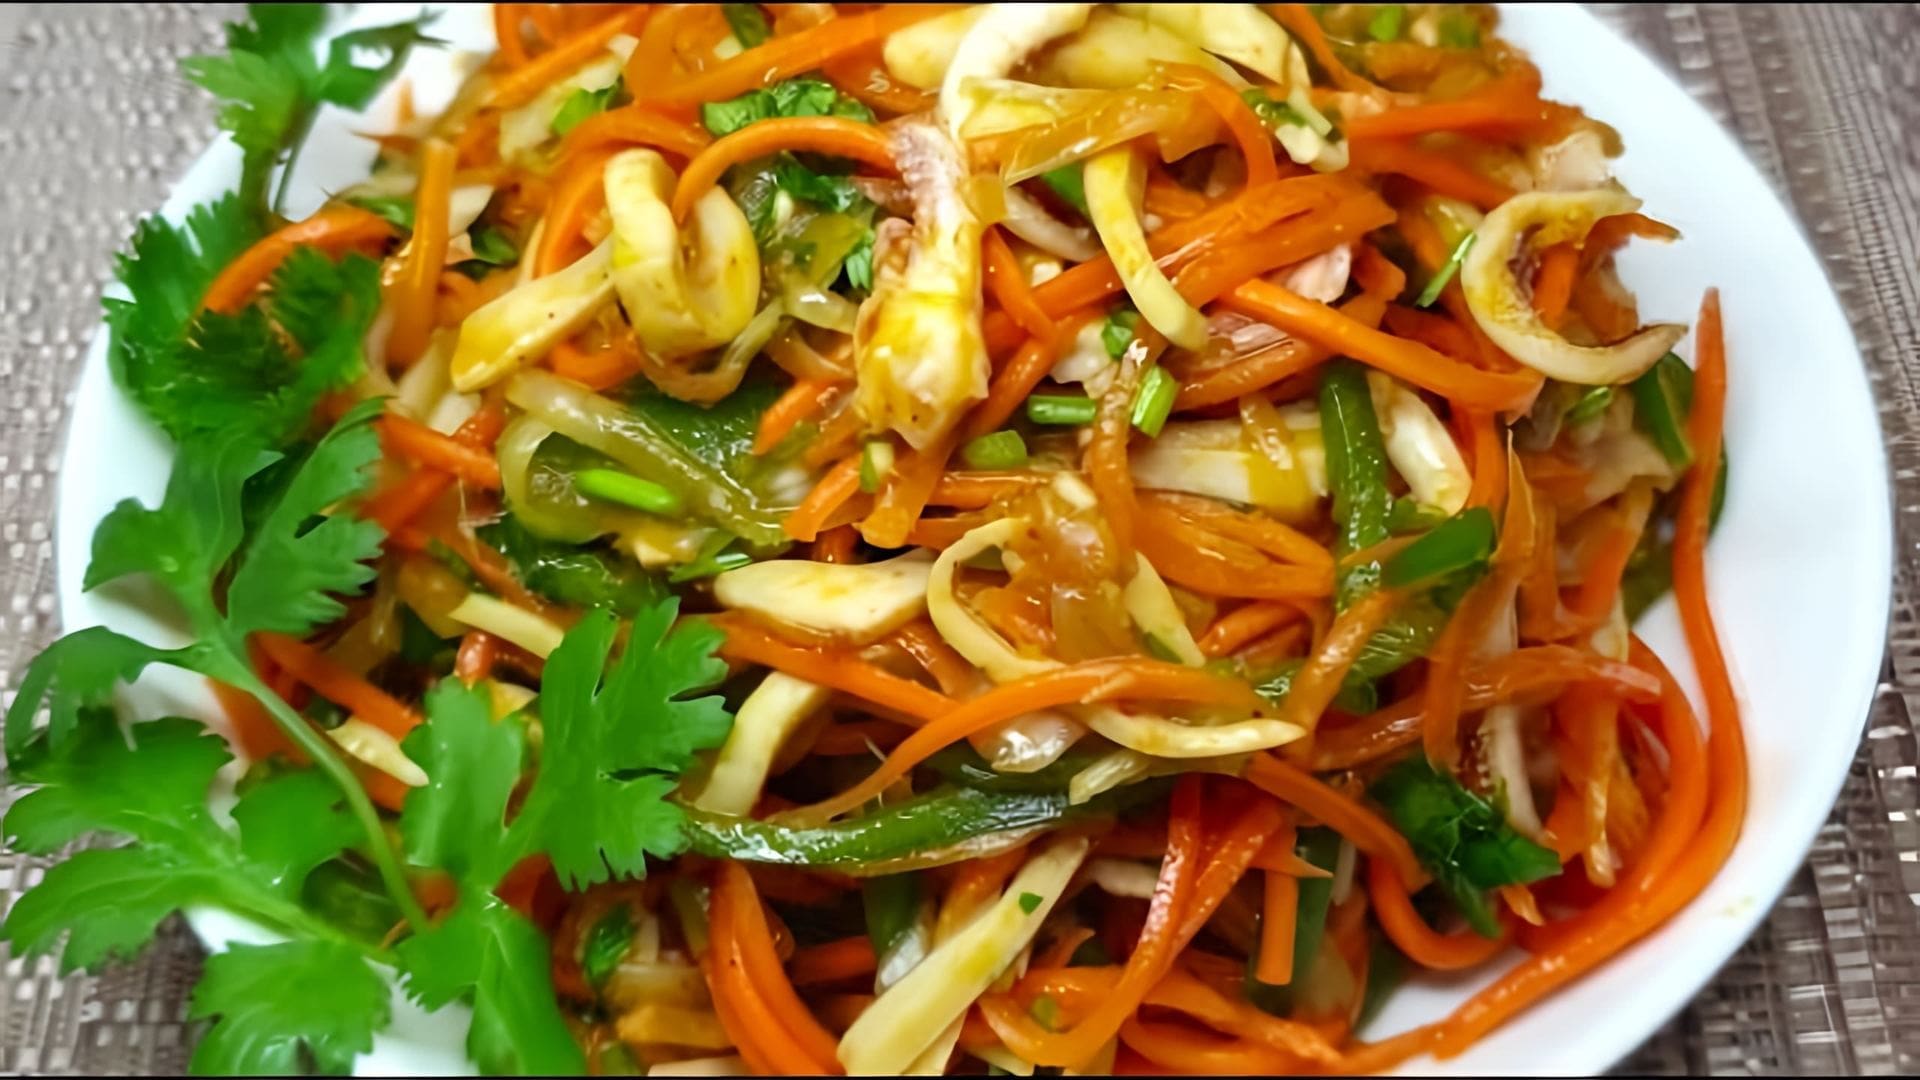 В этом видео демонстрируется рецепт приготовления салата с кальмарами и морковью по-корейски